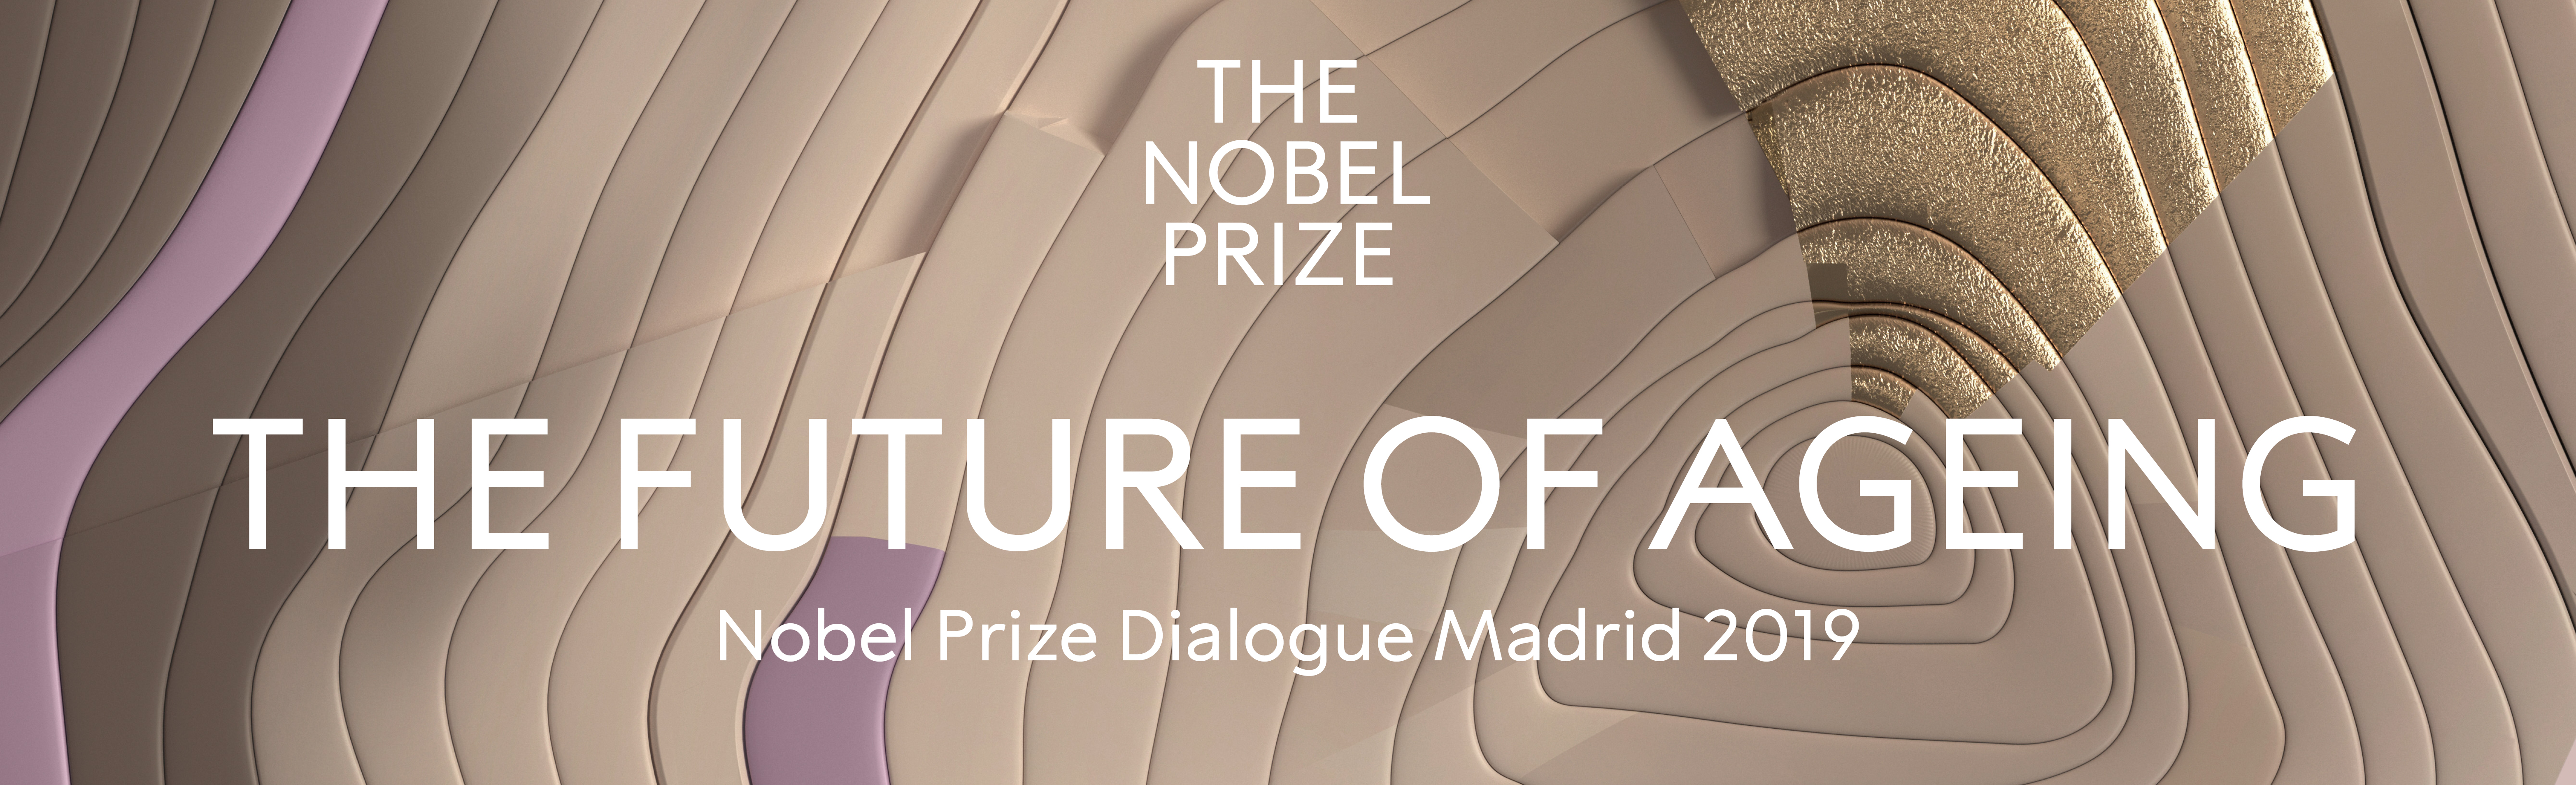 Header image for Nobel Prize Dialogue Madrid 2019